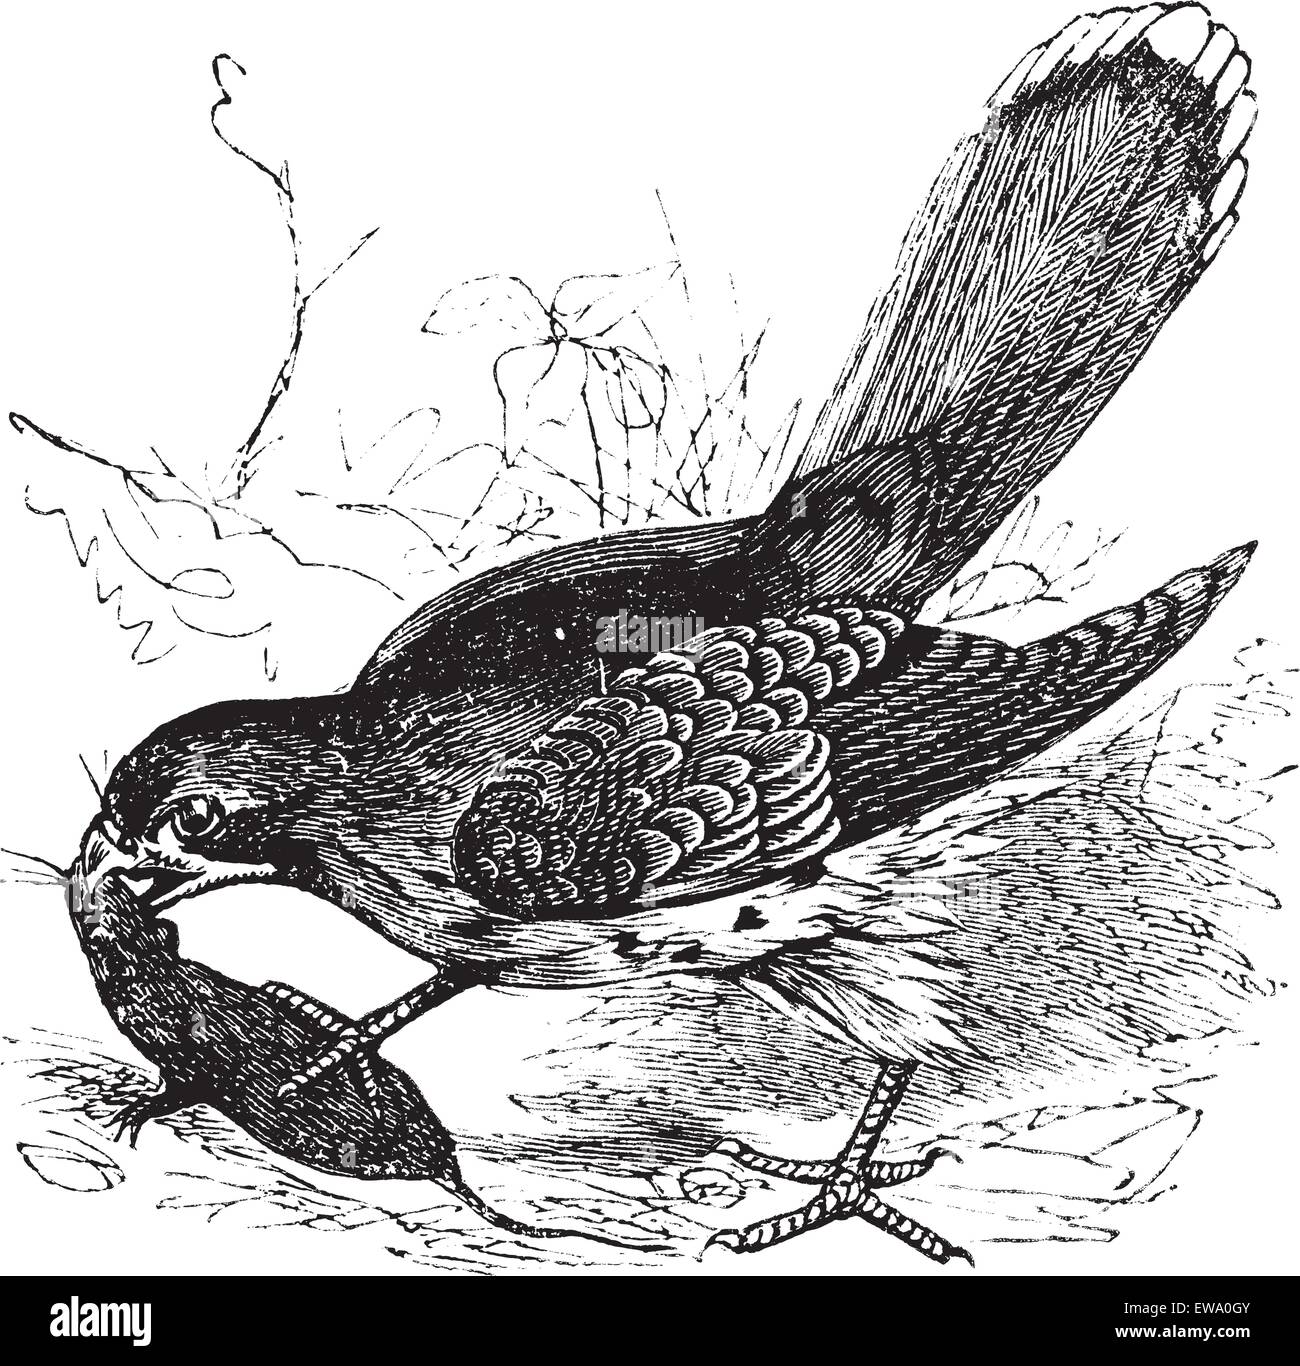 Falcon ou Falco sp., gravure d'époque. Vieille illustration gravée d'un faucon qui se nourrit d'une souris. Illustration de Vecteur